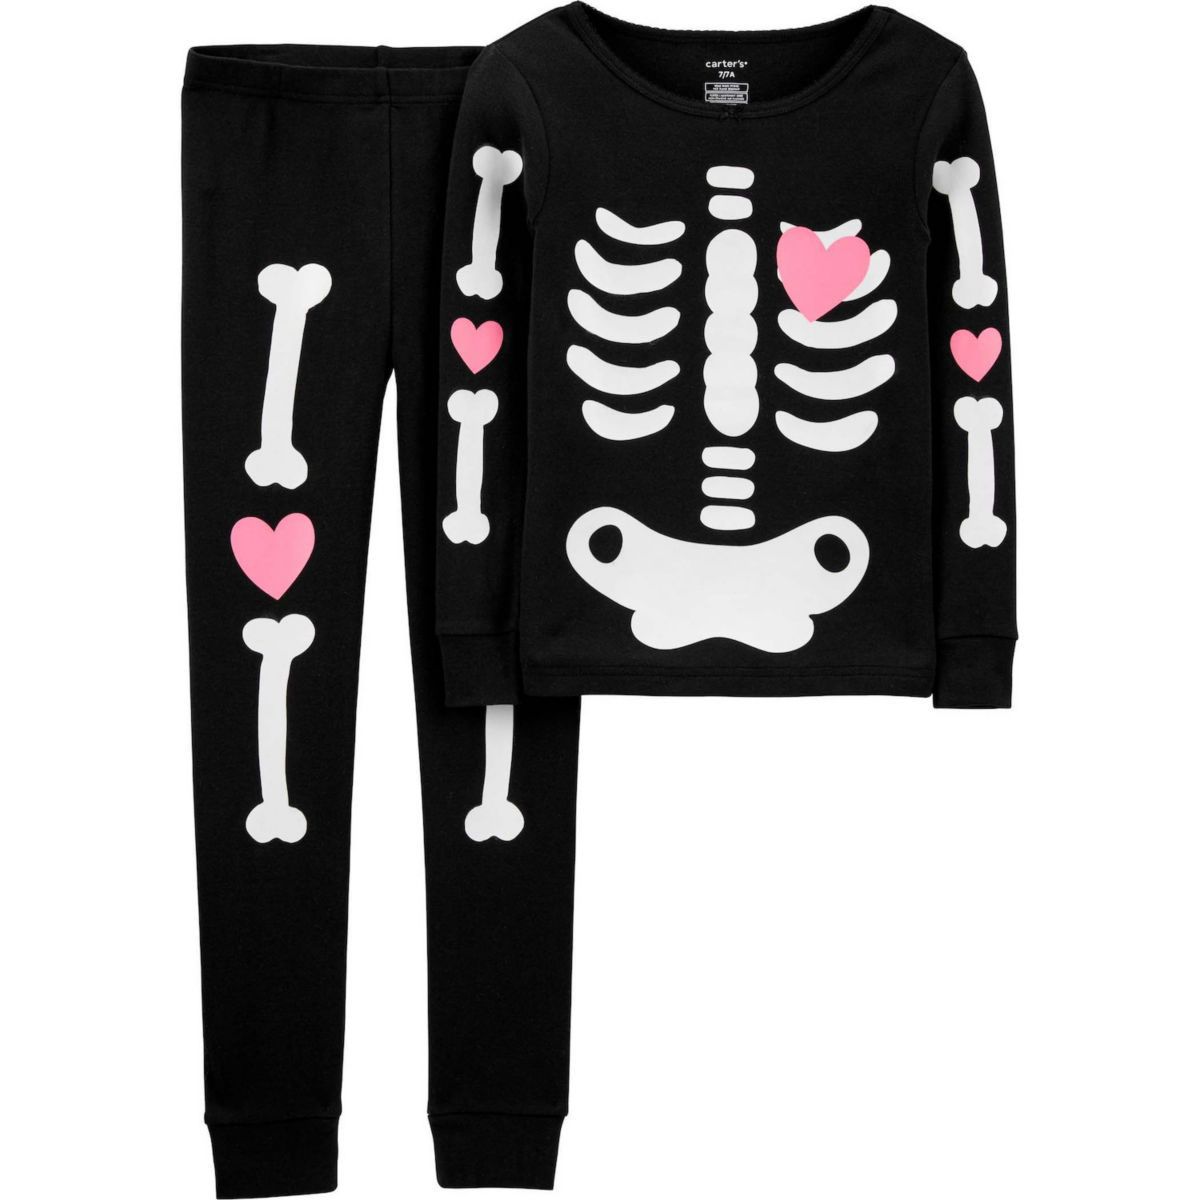 Halloween pajamas or pjs trend - kids pajamas set with skeleton pattern